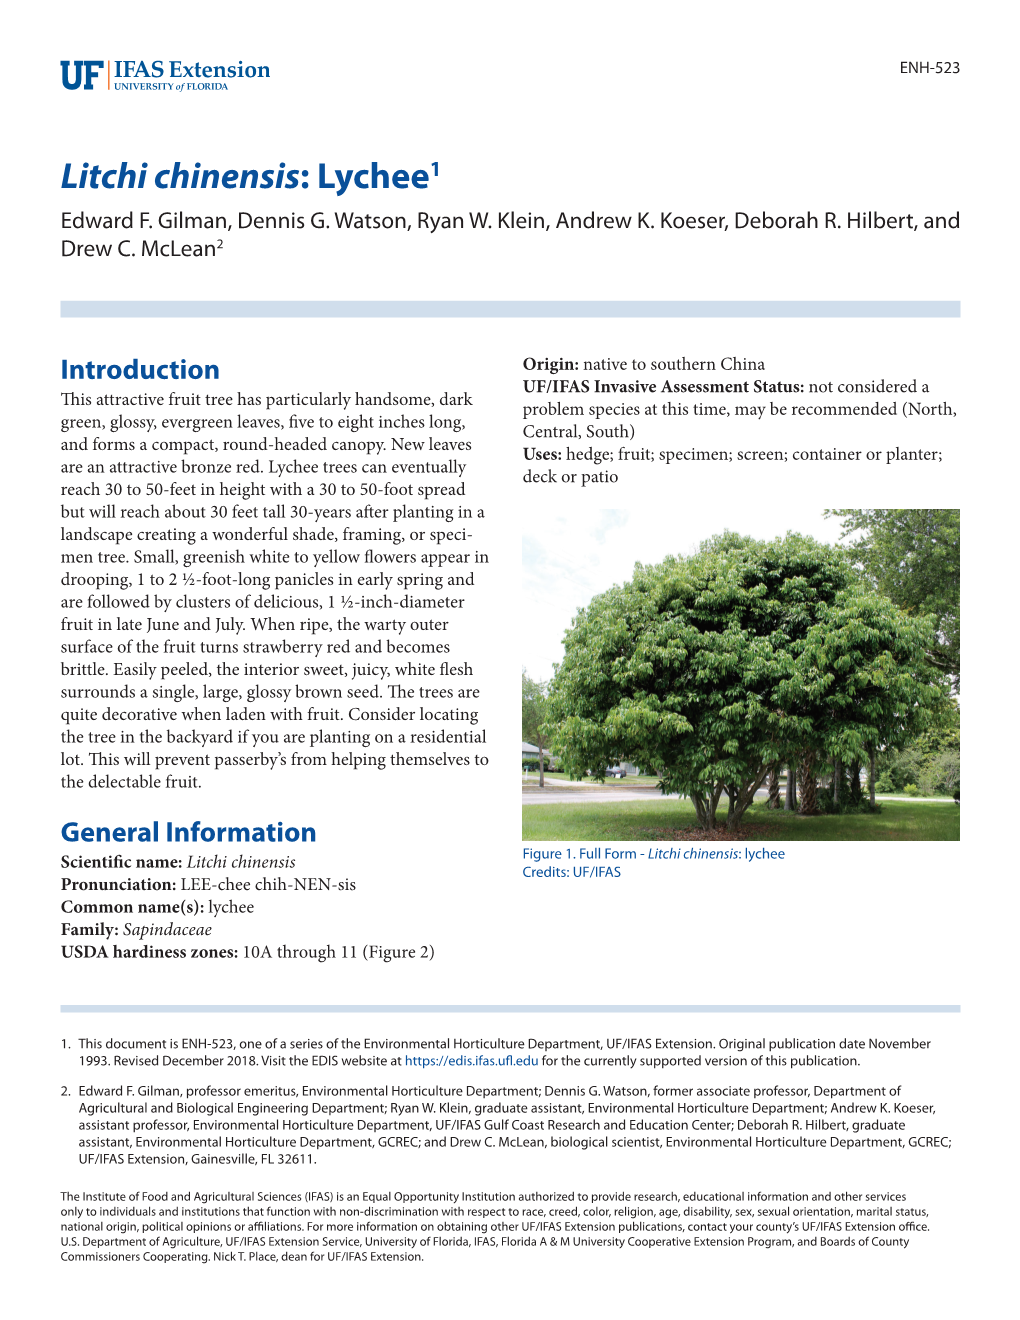 Litchi Chinensis: Lychee1 Edward F